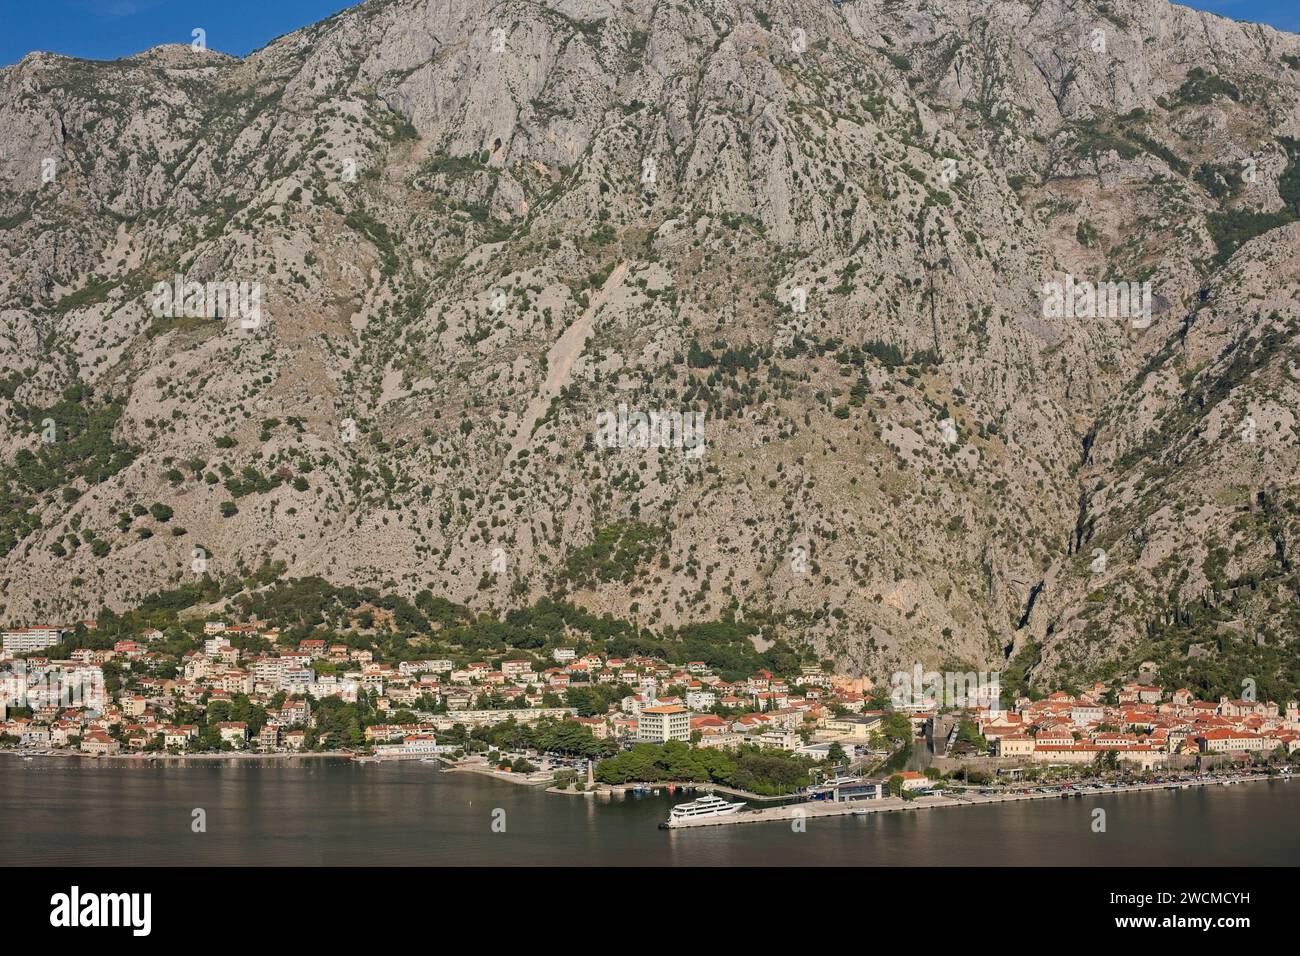 Il pittoresco villaggio di Cattaro in Montenegro si annida lungo la tranquilla baia, con le maestose montagne balcaniche che si innalzano sullo sfondo. Foto Stock